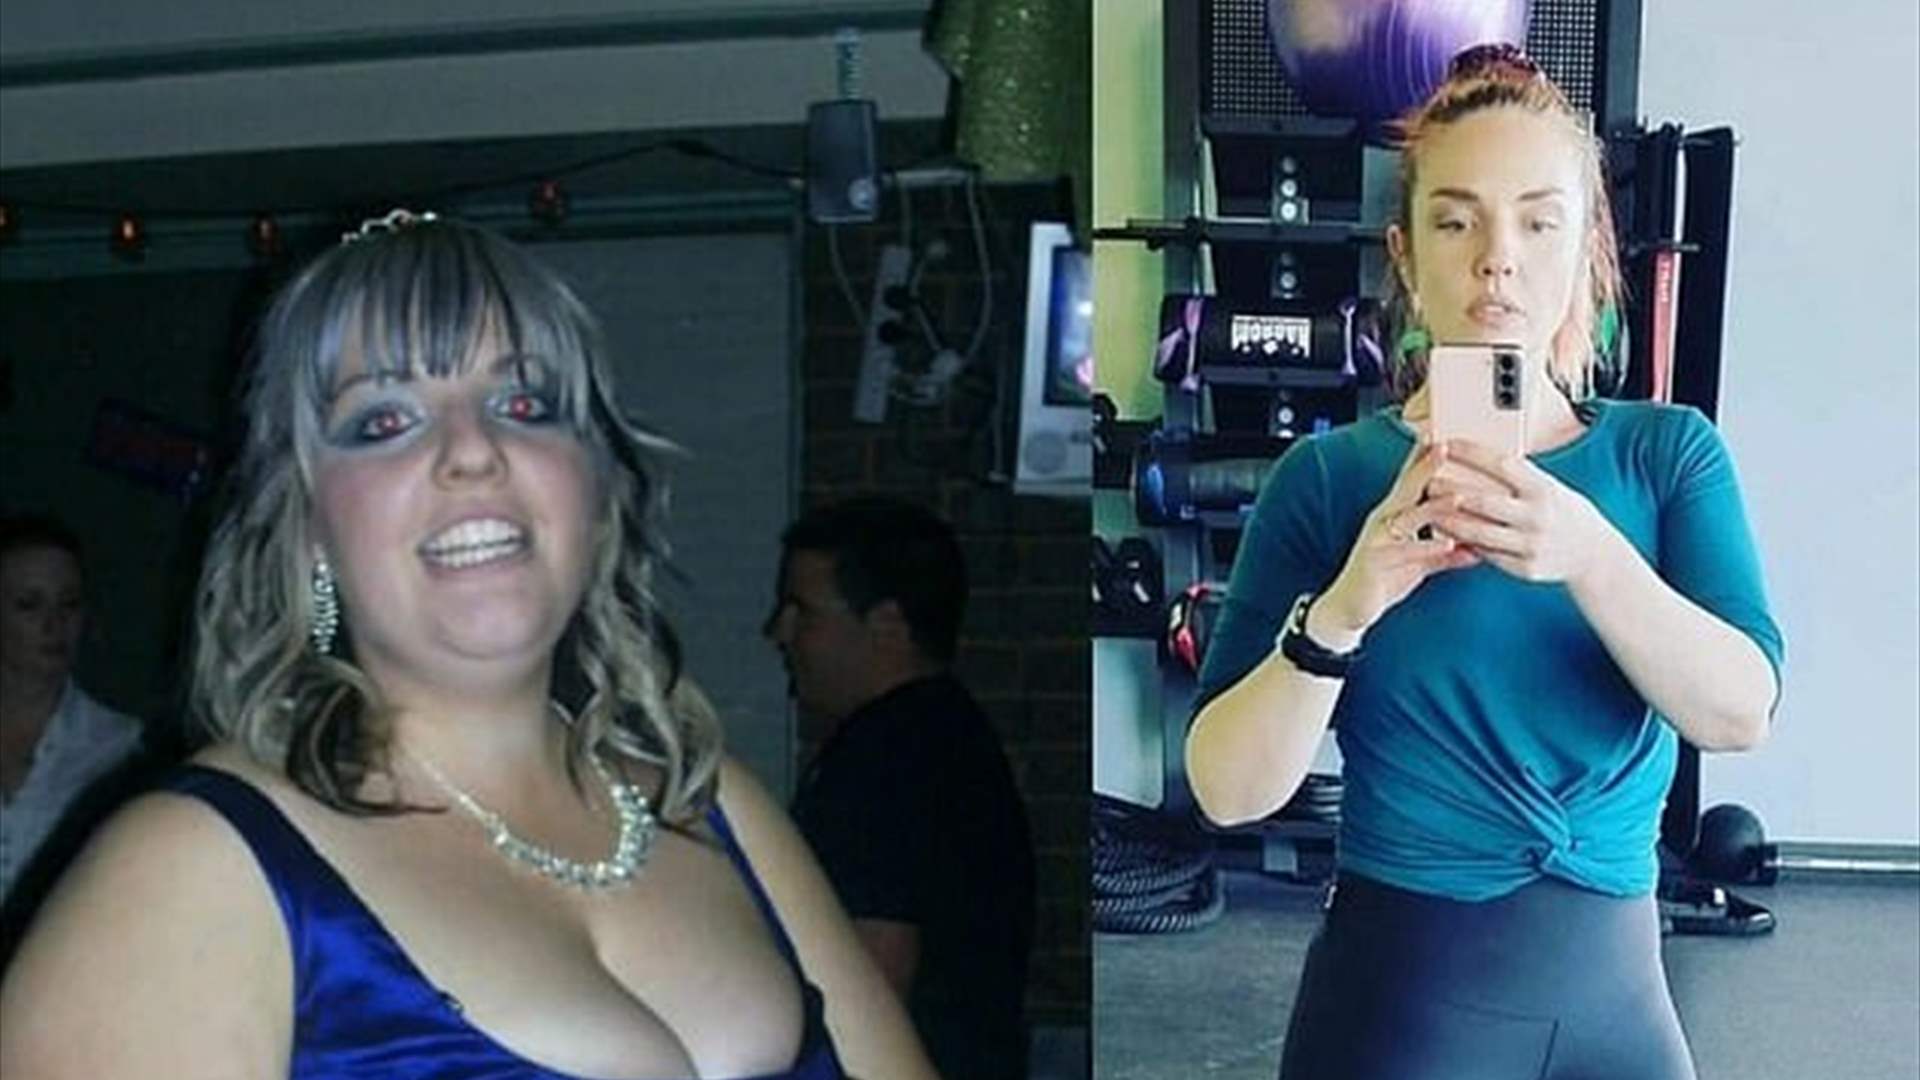 بعد محاولات عدة لخسارة الوزن... استطاعت هذه المرأة التخلص من 46 كيلوغرامًا: والسبب تطبيق الكتروني؟